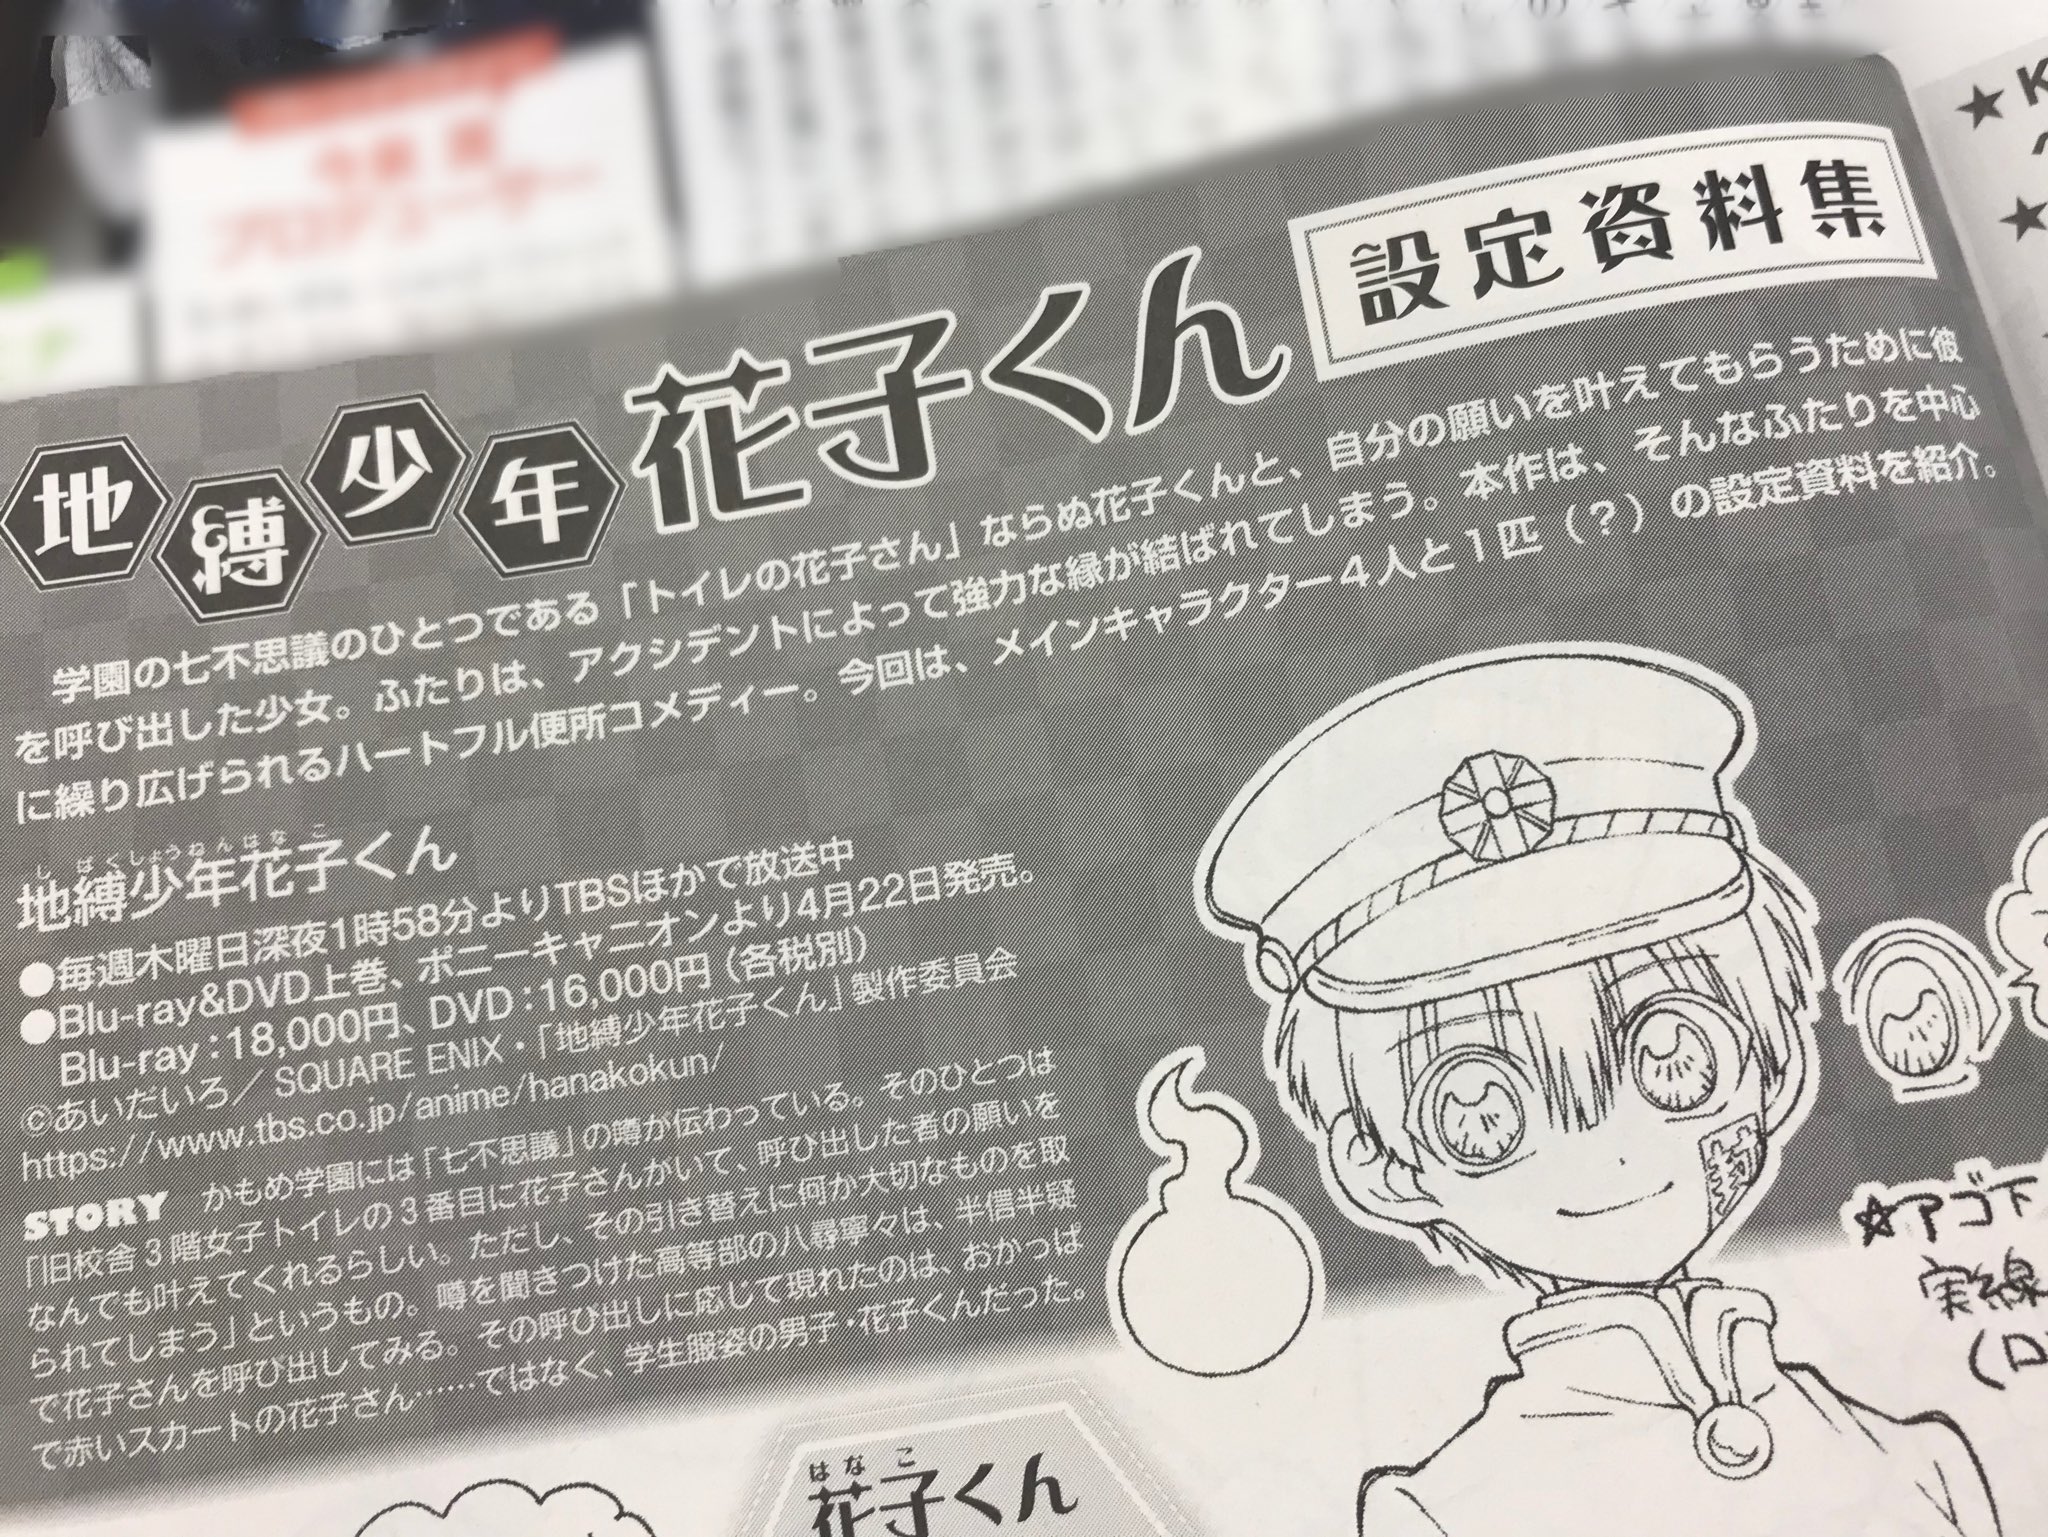 地縛少年花子くん 公式 現在発売中のアニメディア2月号にて 地縛少年花子くん の設定資料が掲載されています 是非チェックしてみてください 花子くん 花子くんアニメ